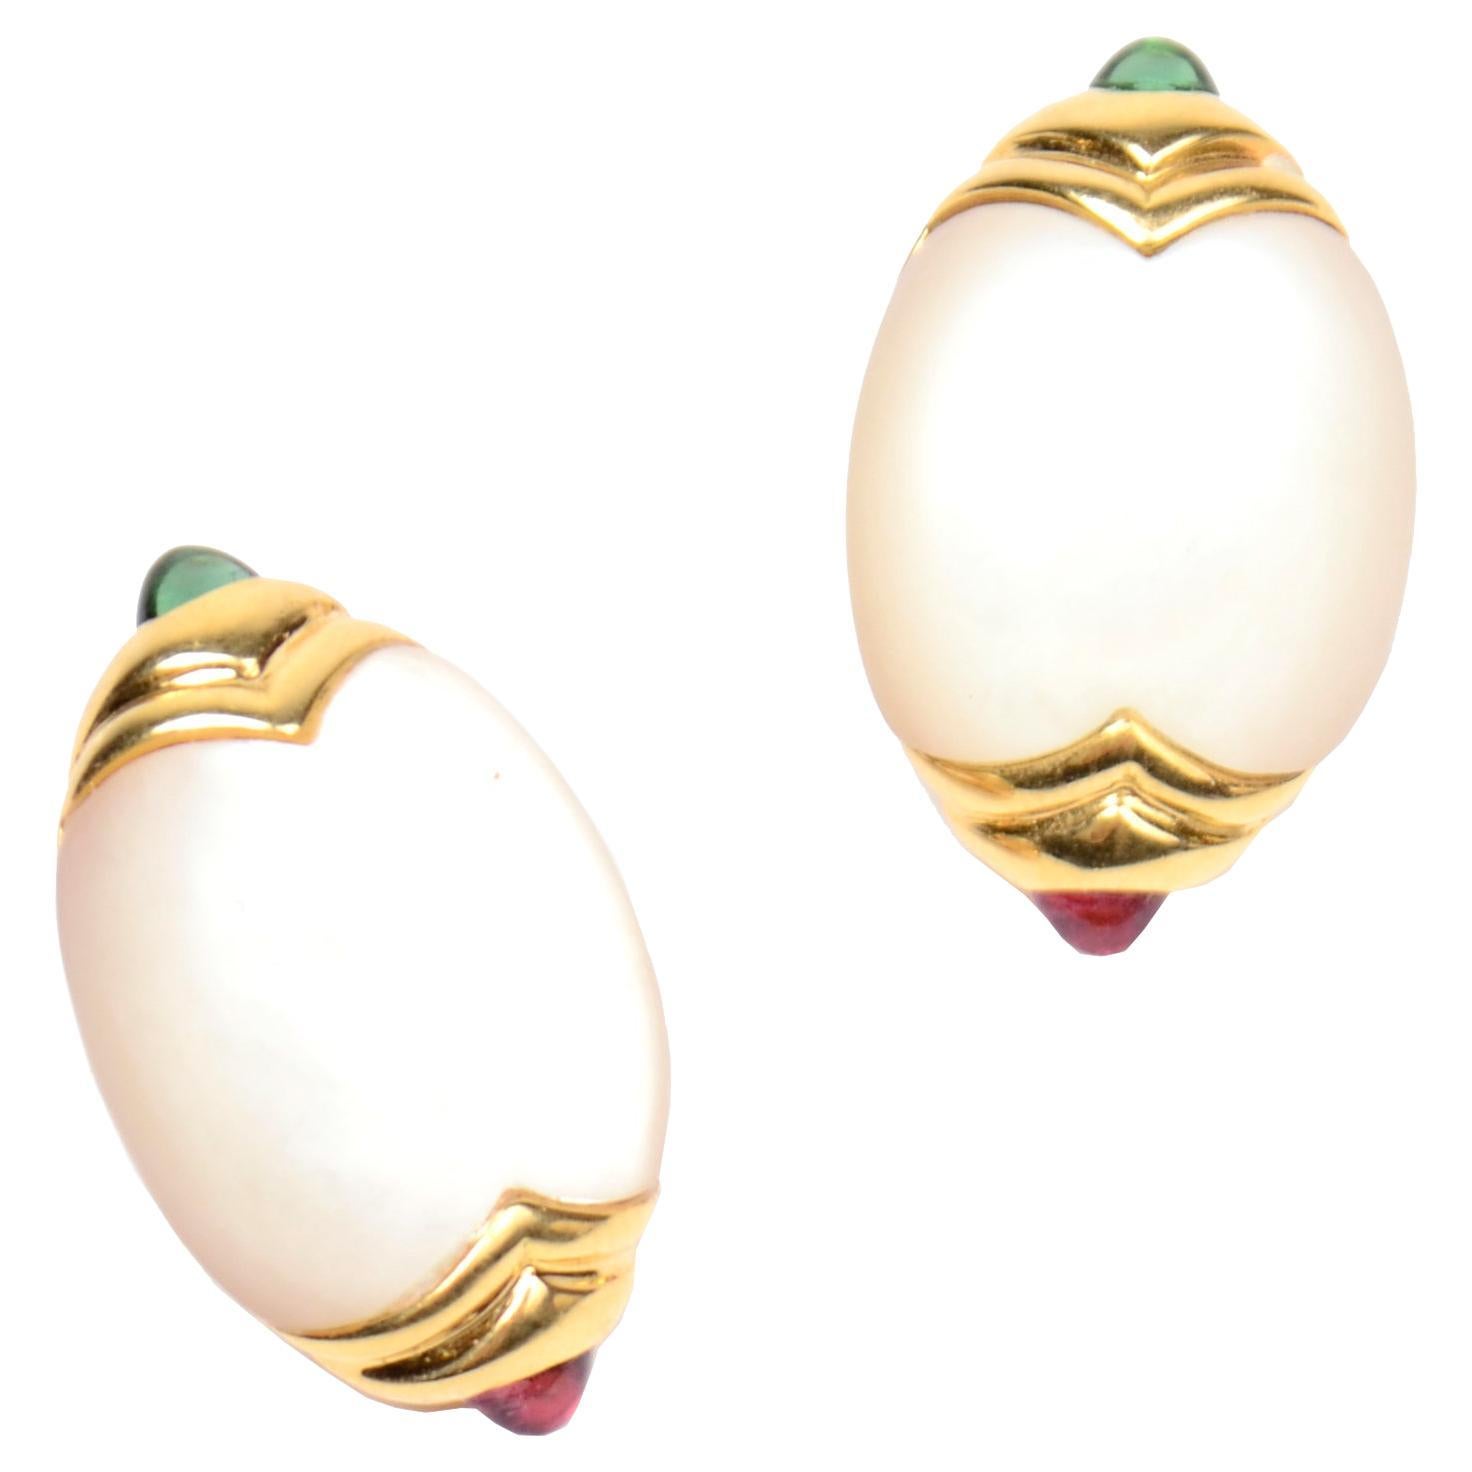 Vintage Torres 18k Gold 750 Mother of Pearl & Gemstone Earrings